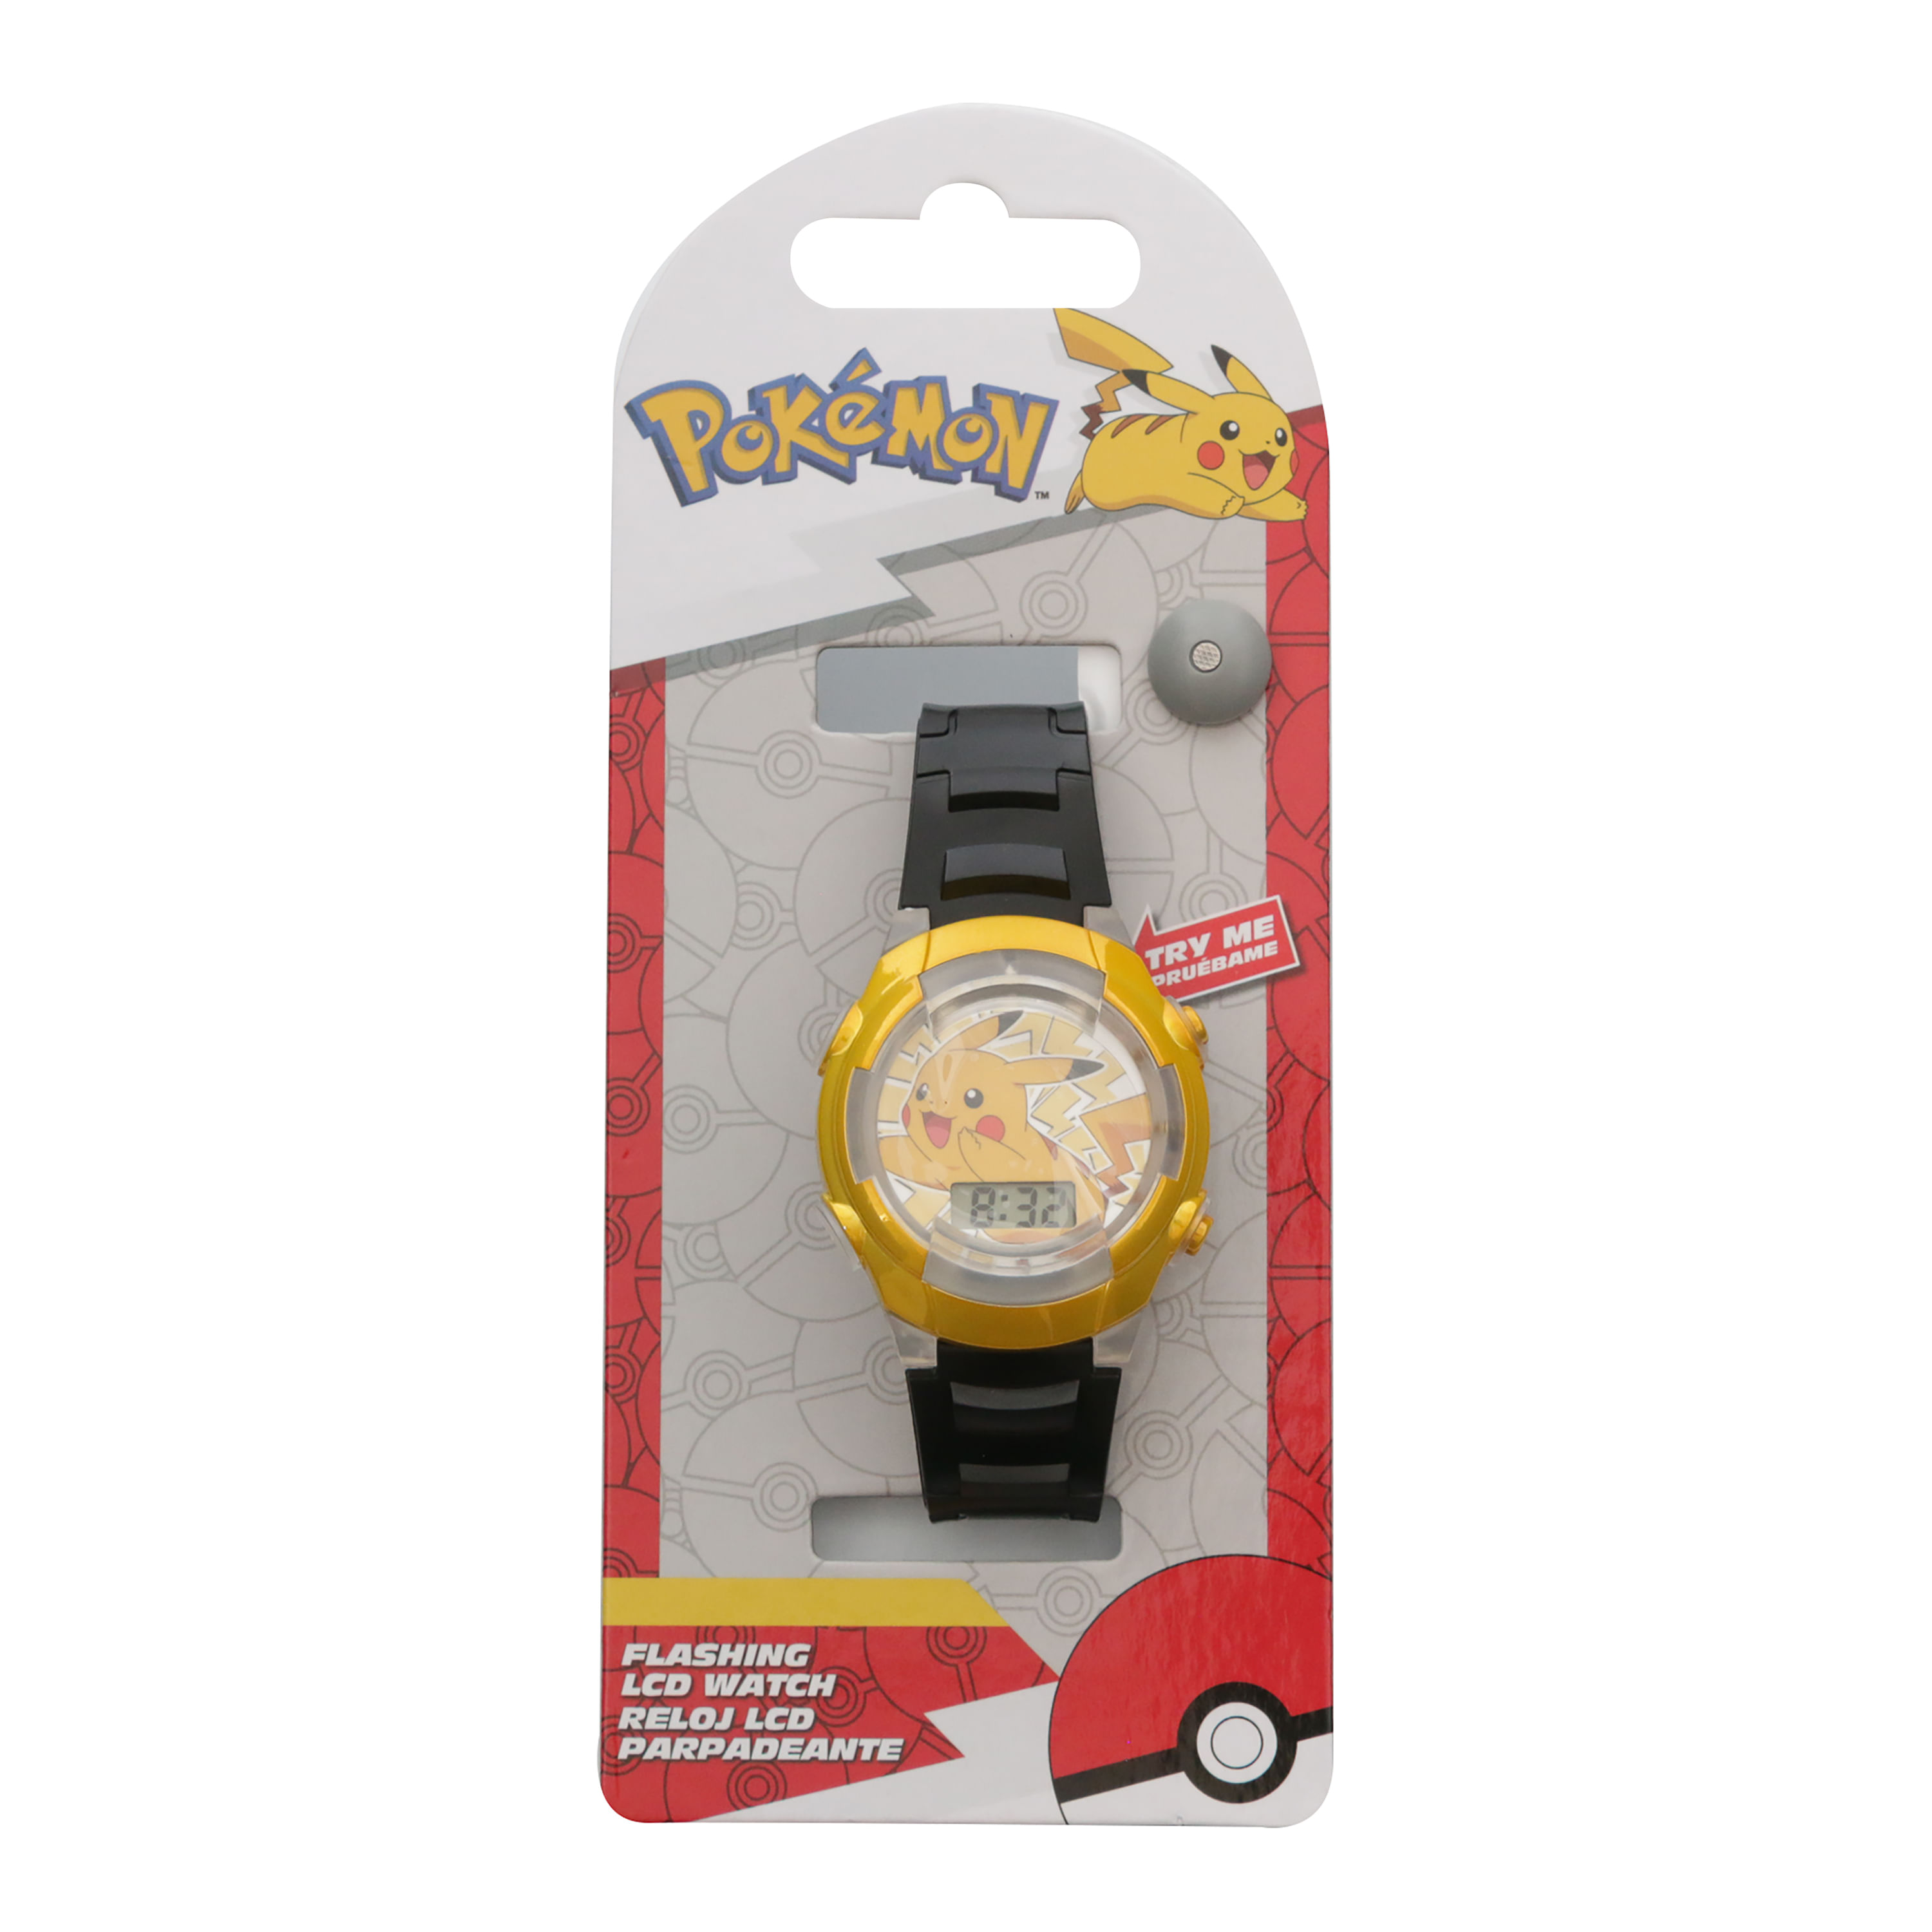 Reloj Pokemon